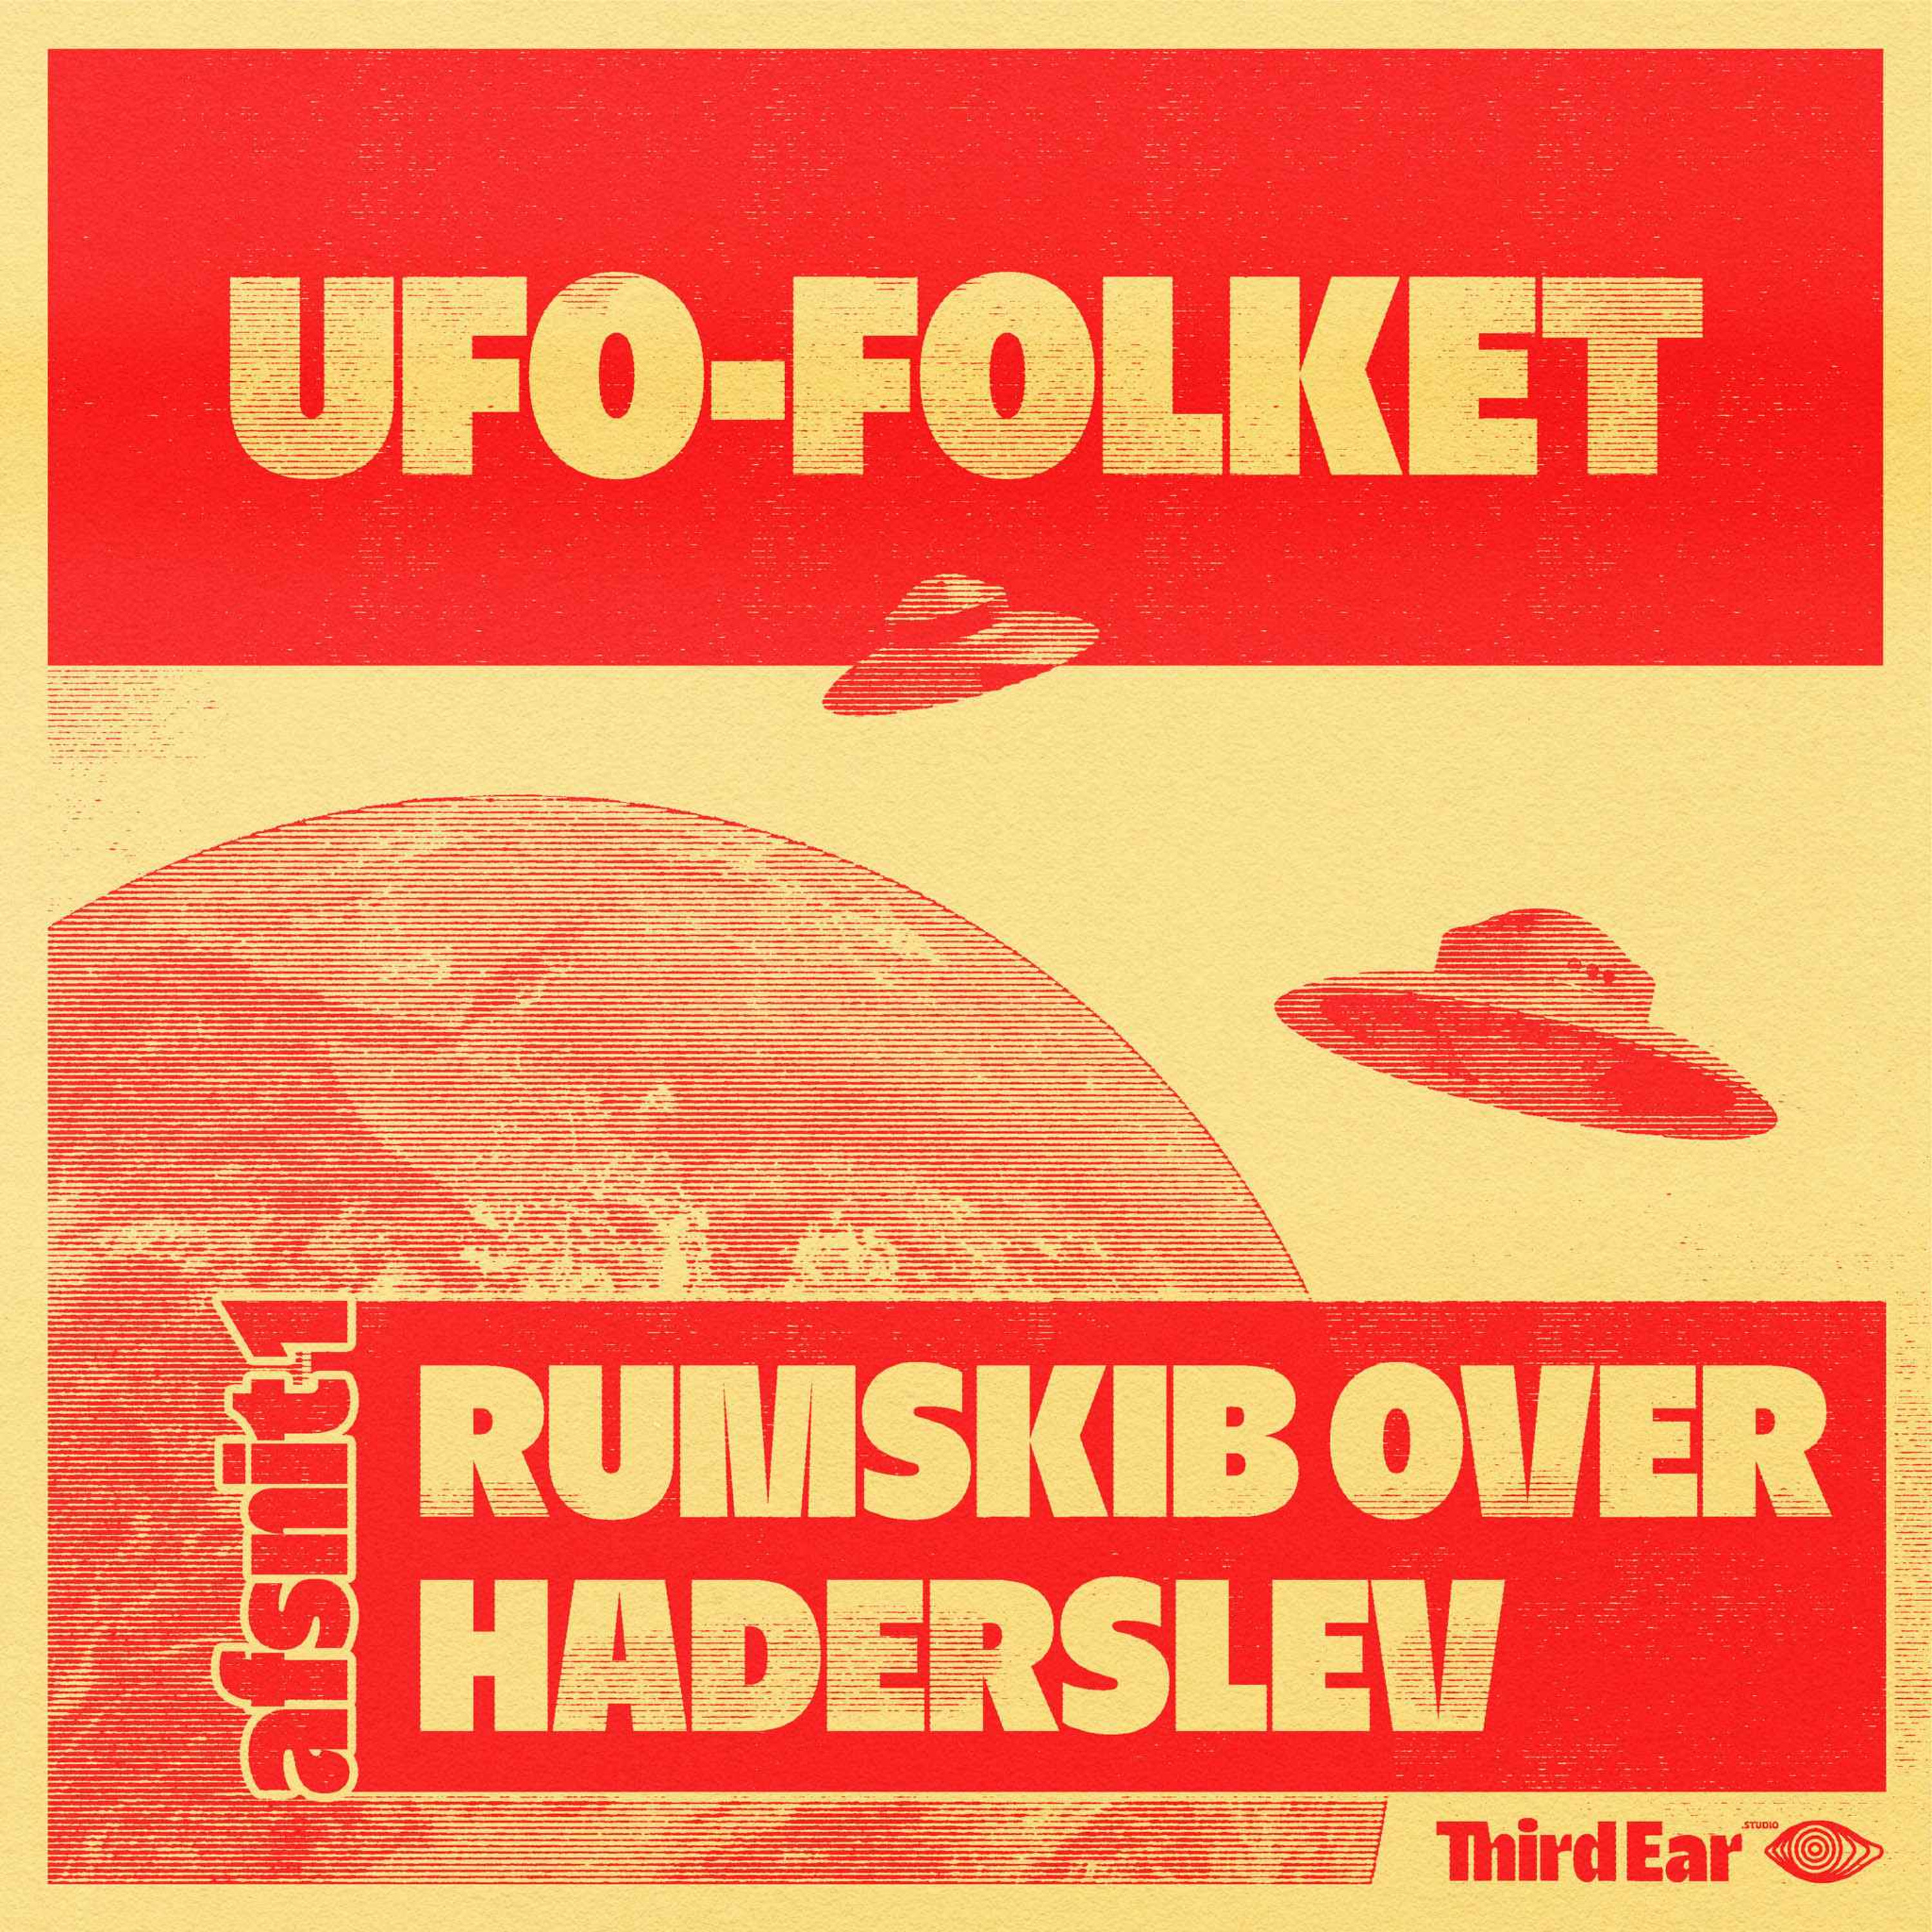 UFO-Folket afsnit 1 - Rumskib over Haderslev